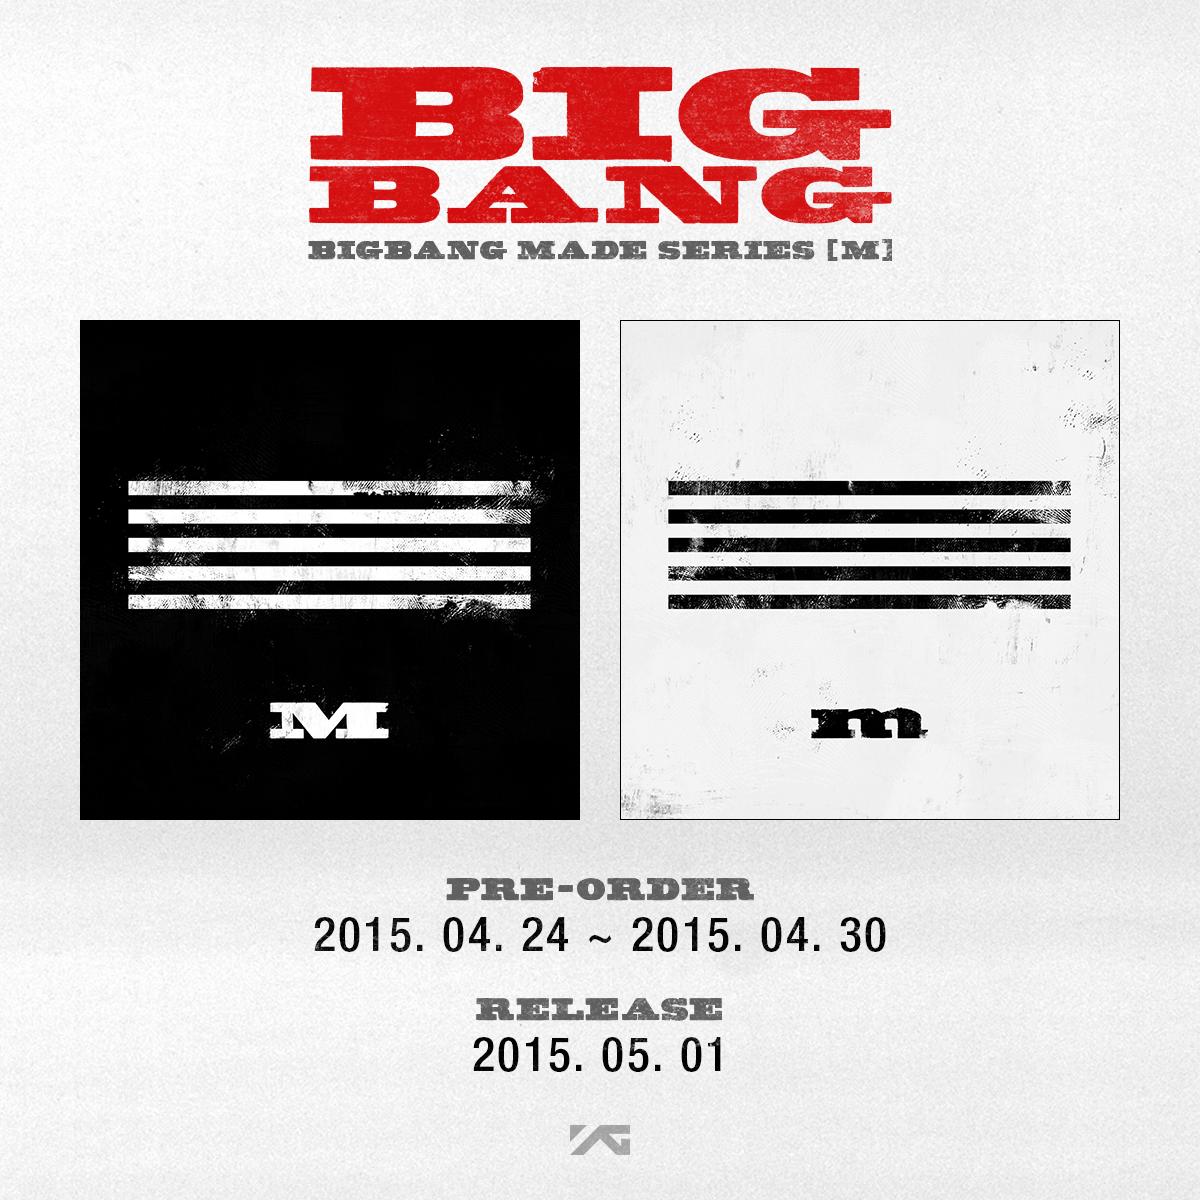 Made bang. BIGBANG made Series. Big Bang made album. Альбом big Bang made большое разрешение. Альбом big Bang made состав.